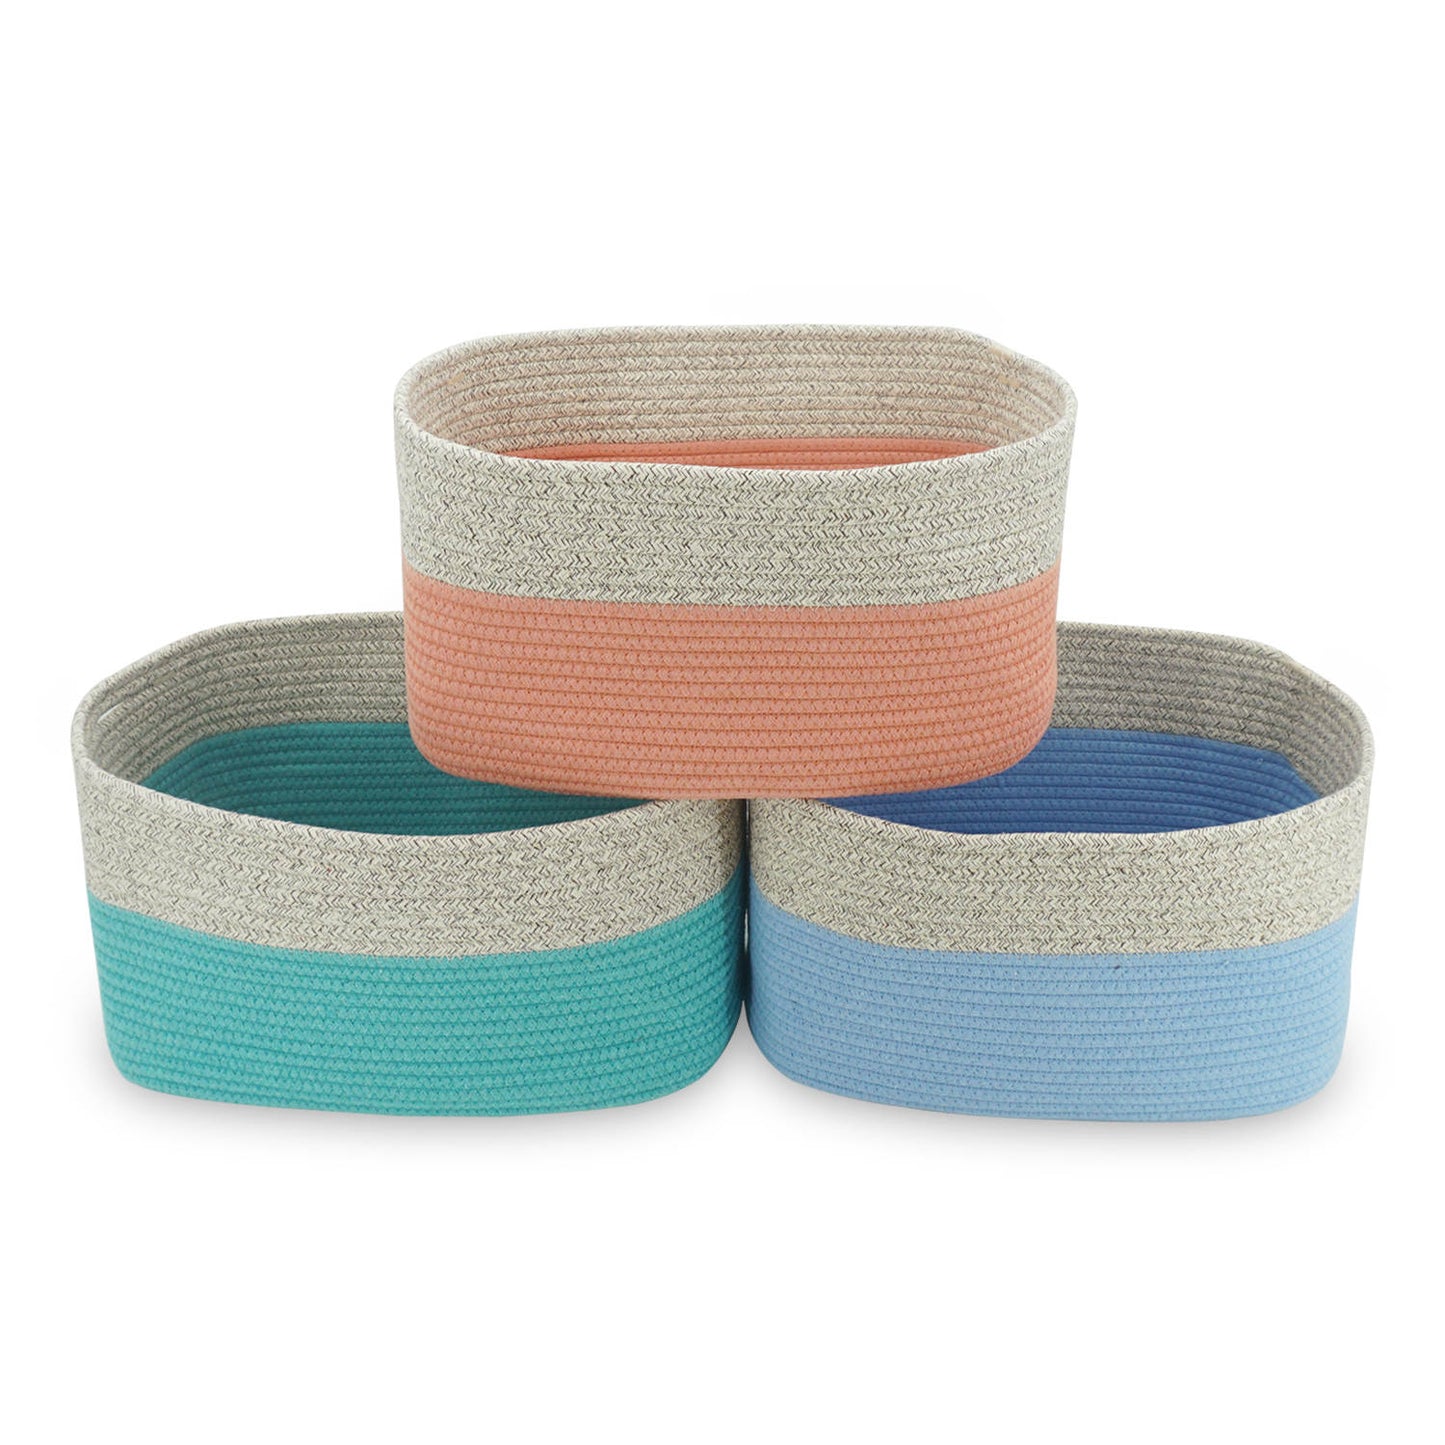 3 Pack Multi-Color Cotton Baskets